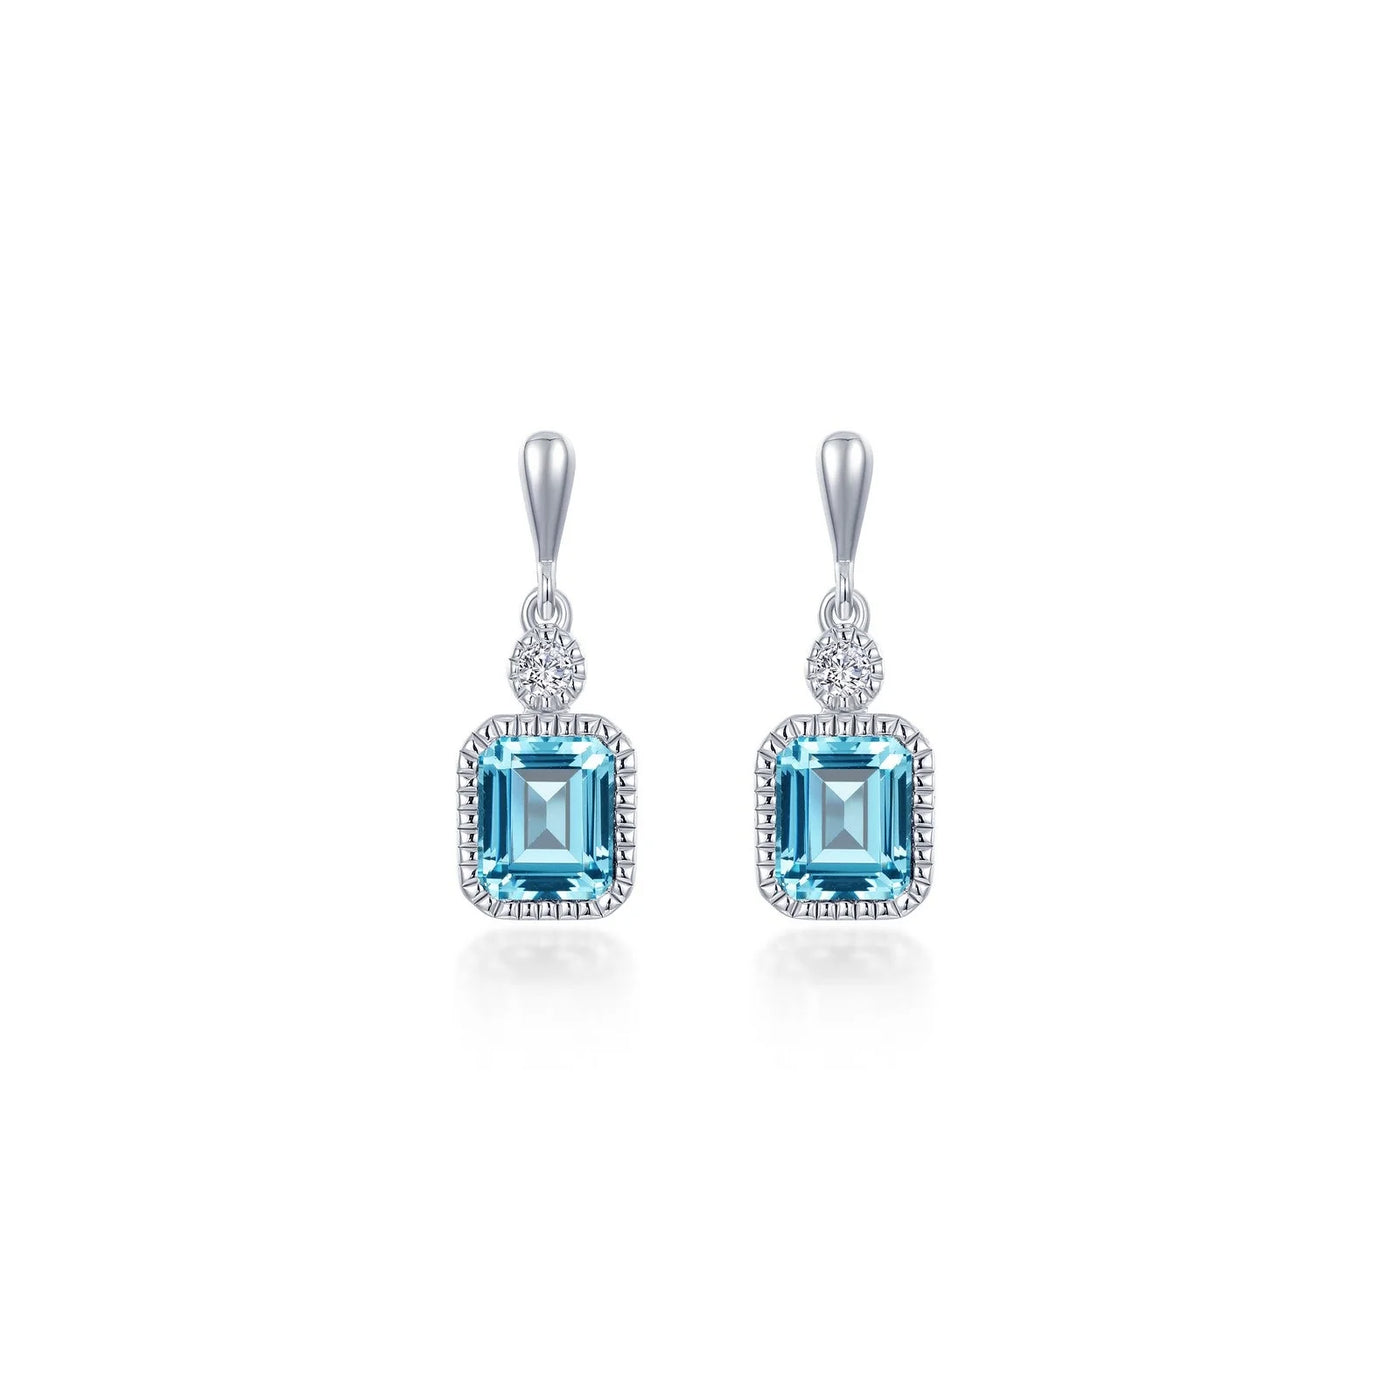 Simulated Emerald-Cut Aquamarine & Diamond March Birthstone Earring